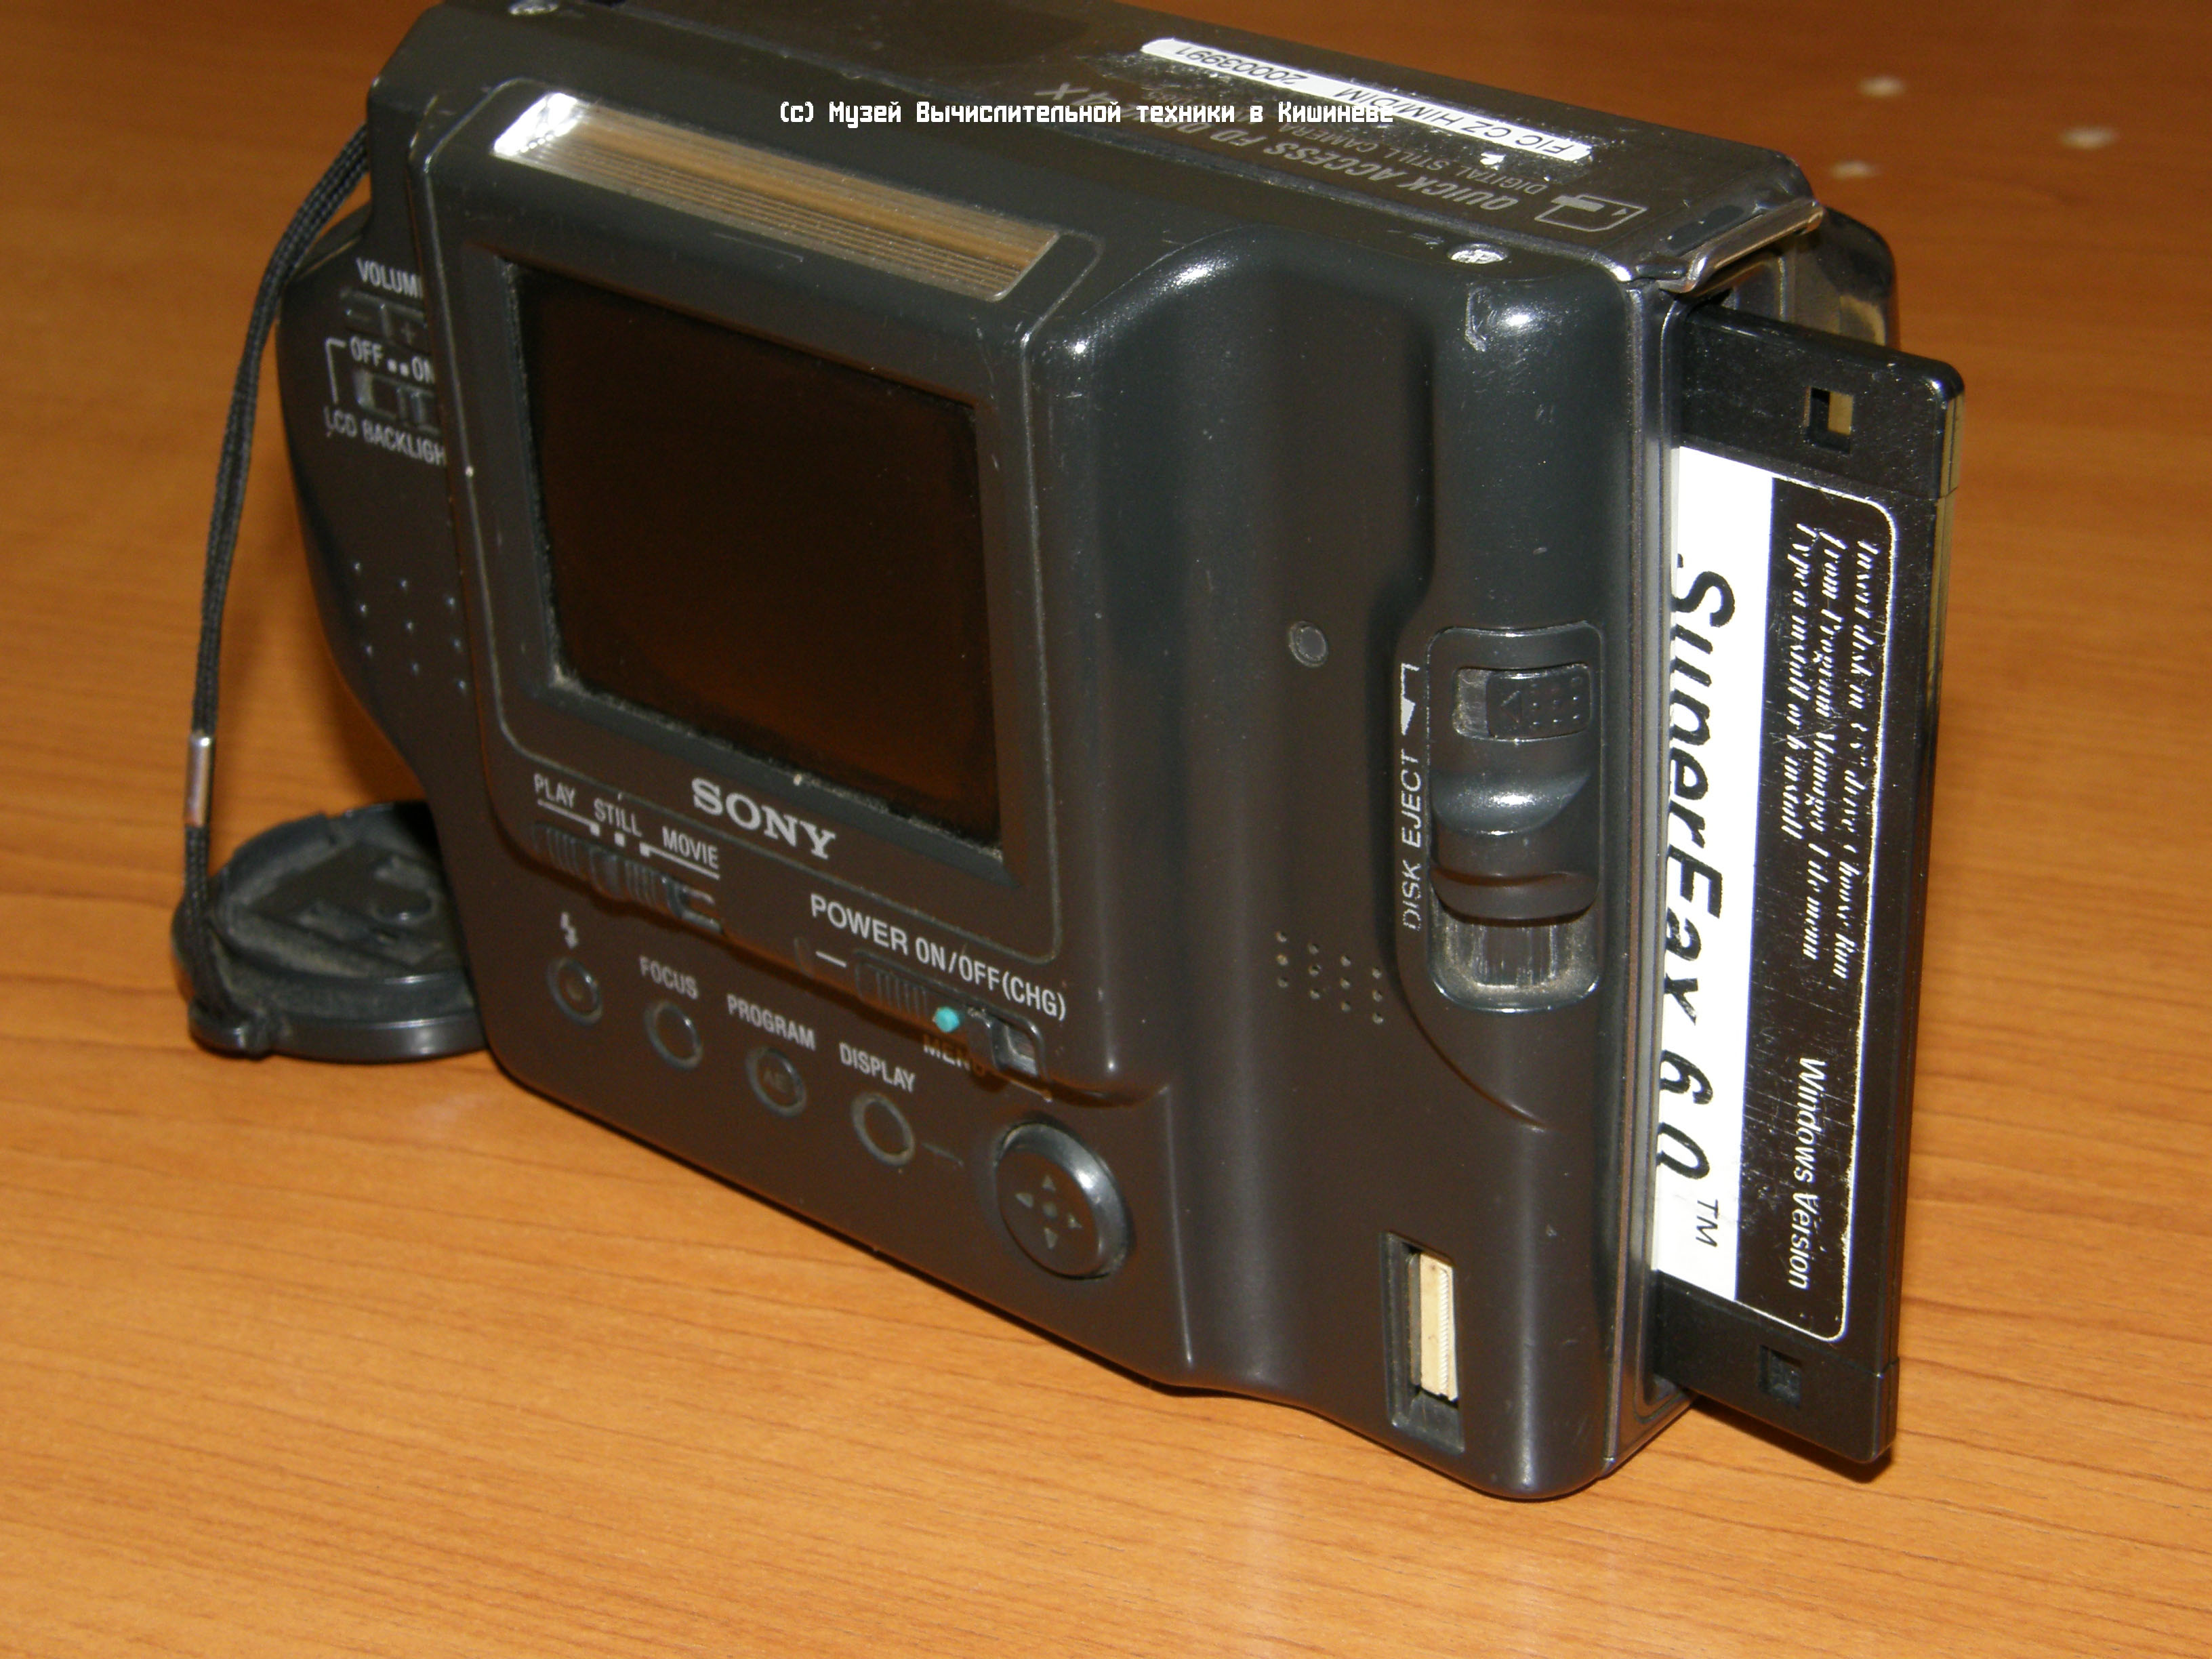 Sony Mavica FD85 floppy